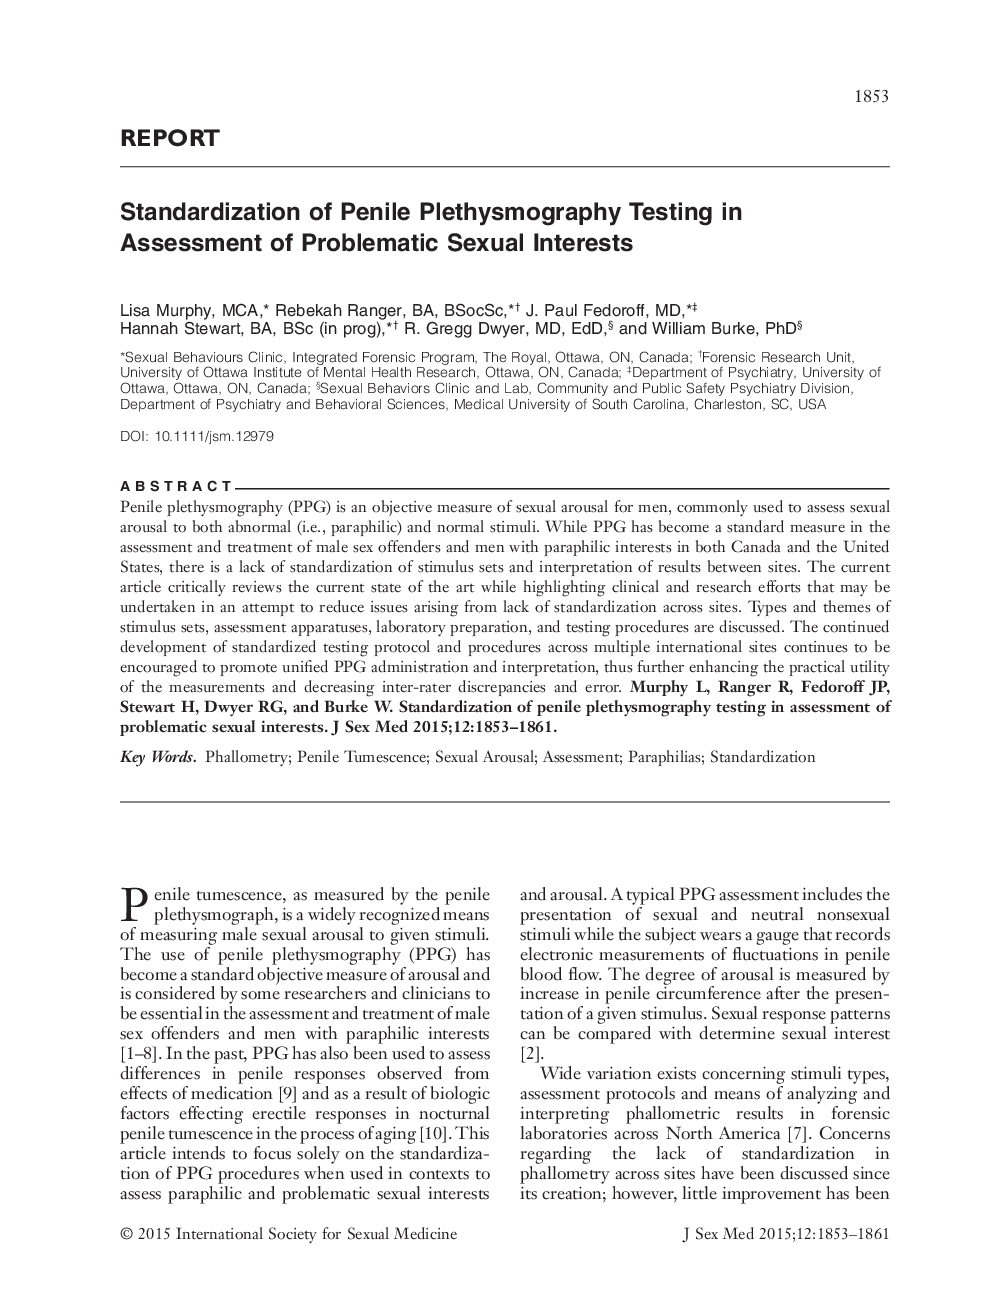 استاندارد سازی تست پلتسیموگرافی پانلی در ارزیابی مشکالت جنسیتی 